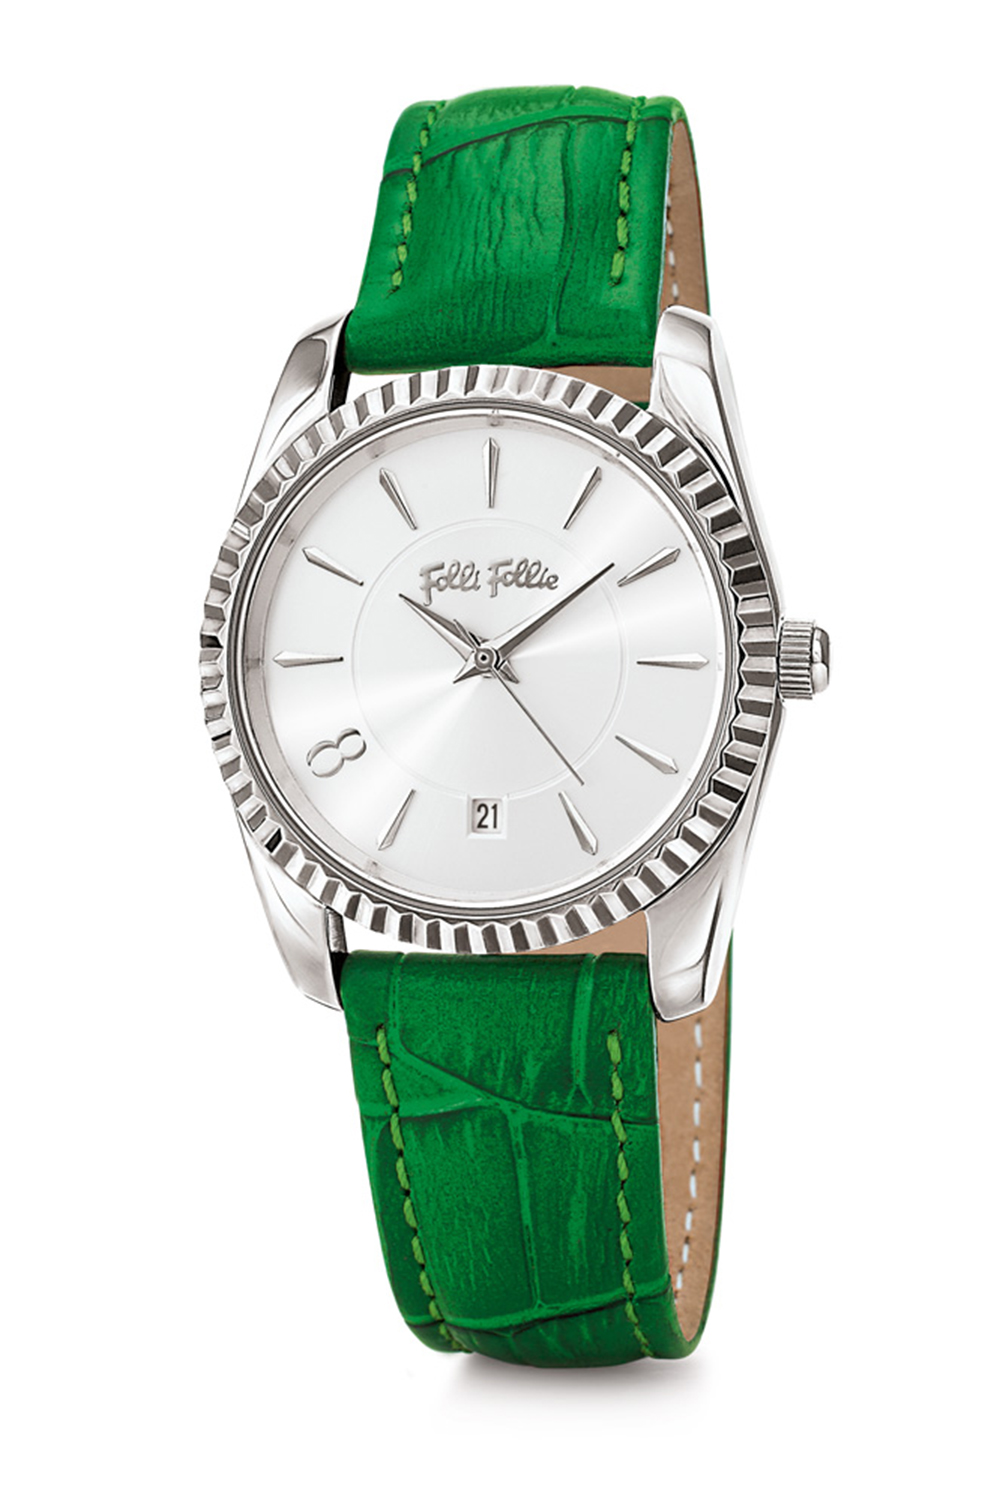 Γυναικεία/Αξεσουάρ/Ρολόγια/Δερμάτινα FOLLI FOLLIE - Γυναικείο ρολόι με δερμάτινο λουράκι FOLLI FOLLIE CHRONOS TALES πράσινο